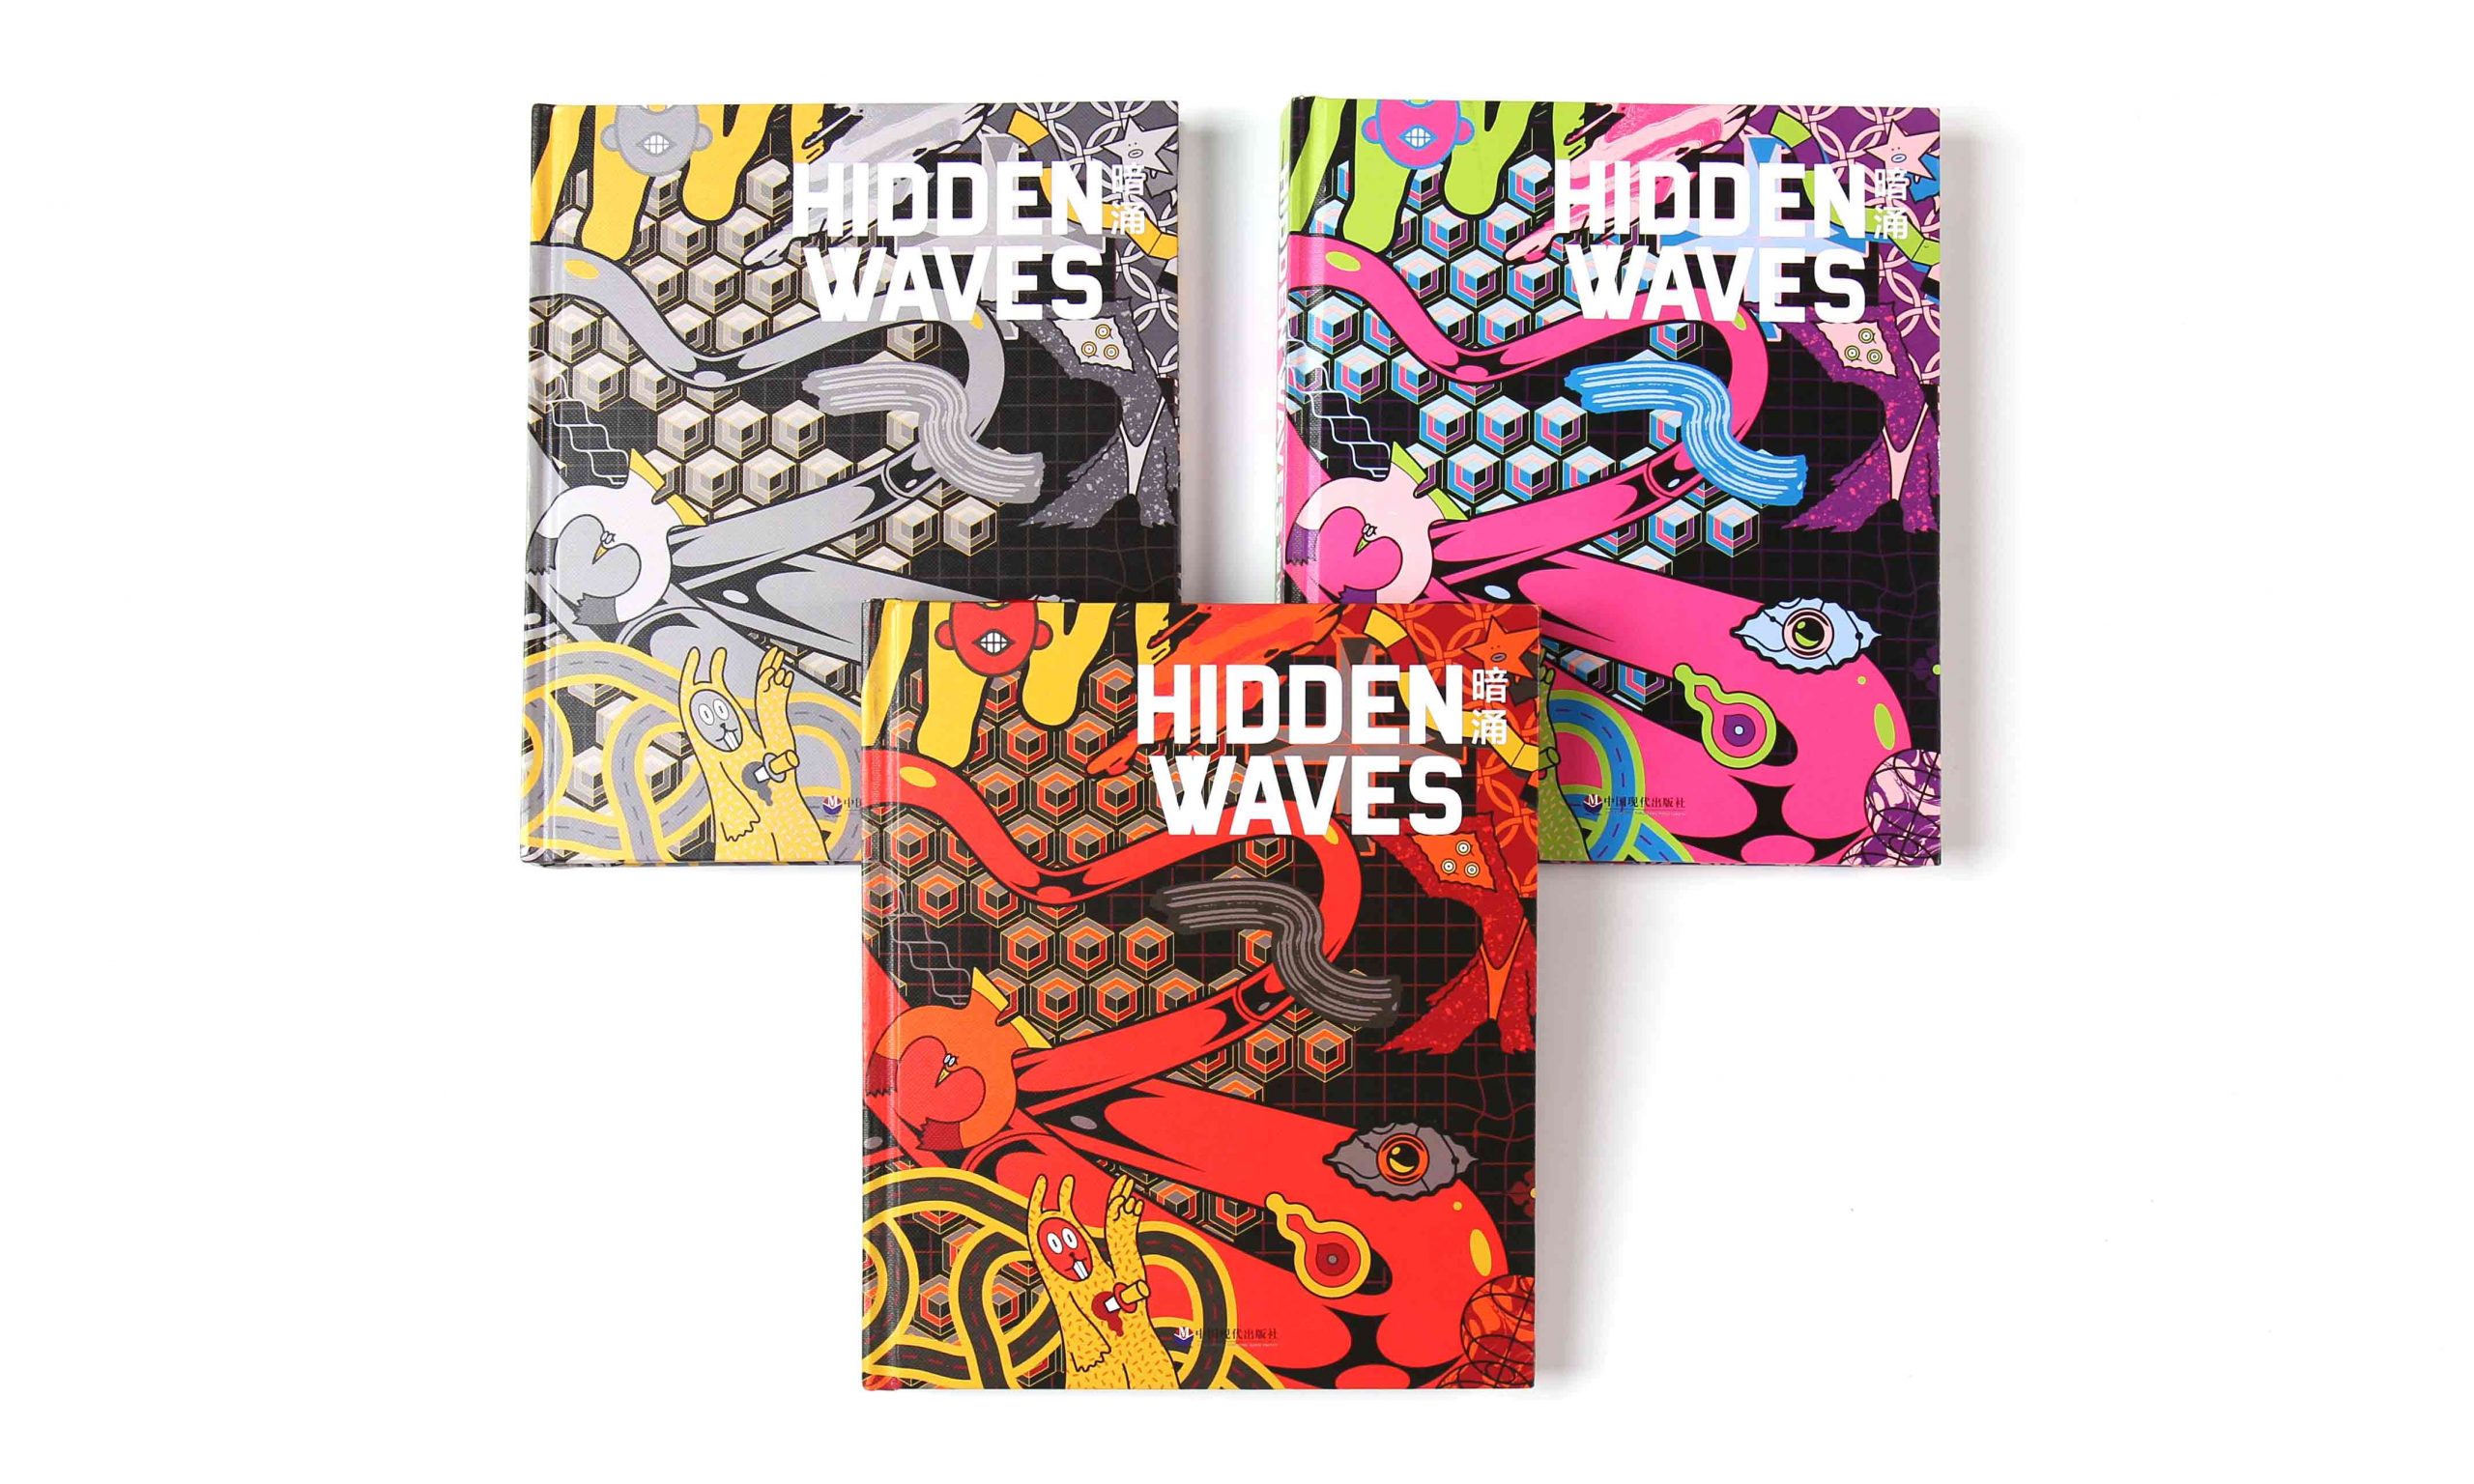 国内首本华人潮流品牌图书 HIDDEN WAVES《暗涌》创刊